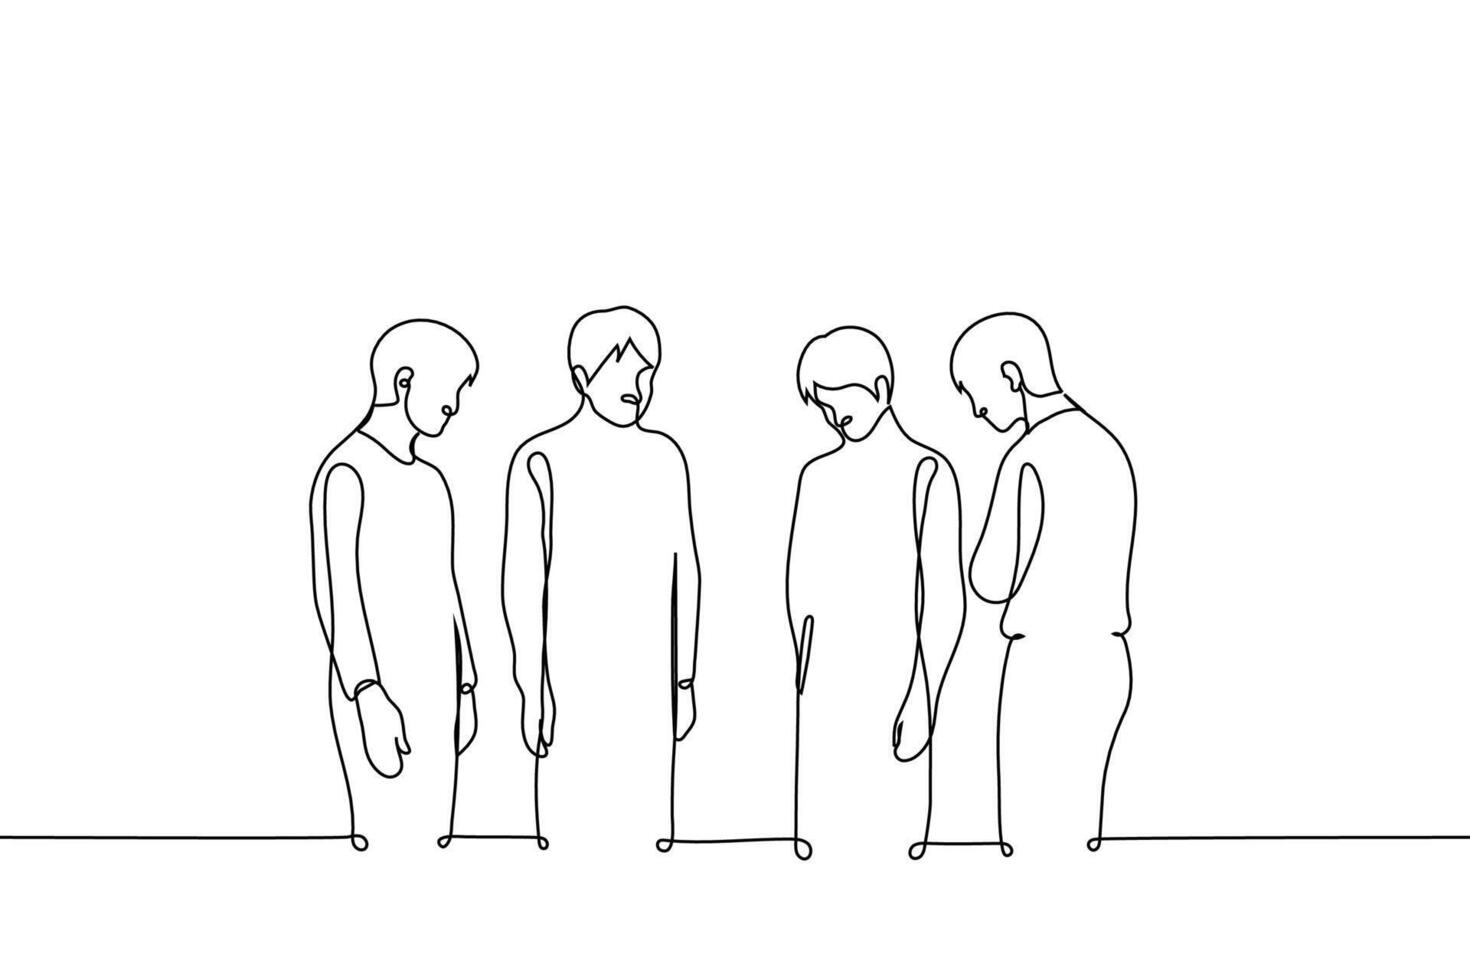 grupp av människor stå i en cirkel med deras huvuden ner, de är ledsen eller se på något i de Centrum på de golv - ett linje teckning vektor